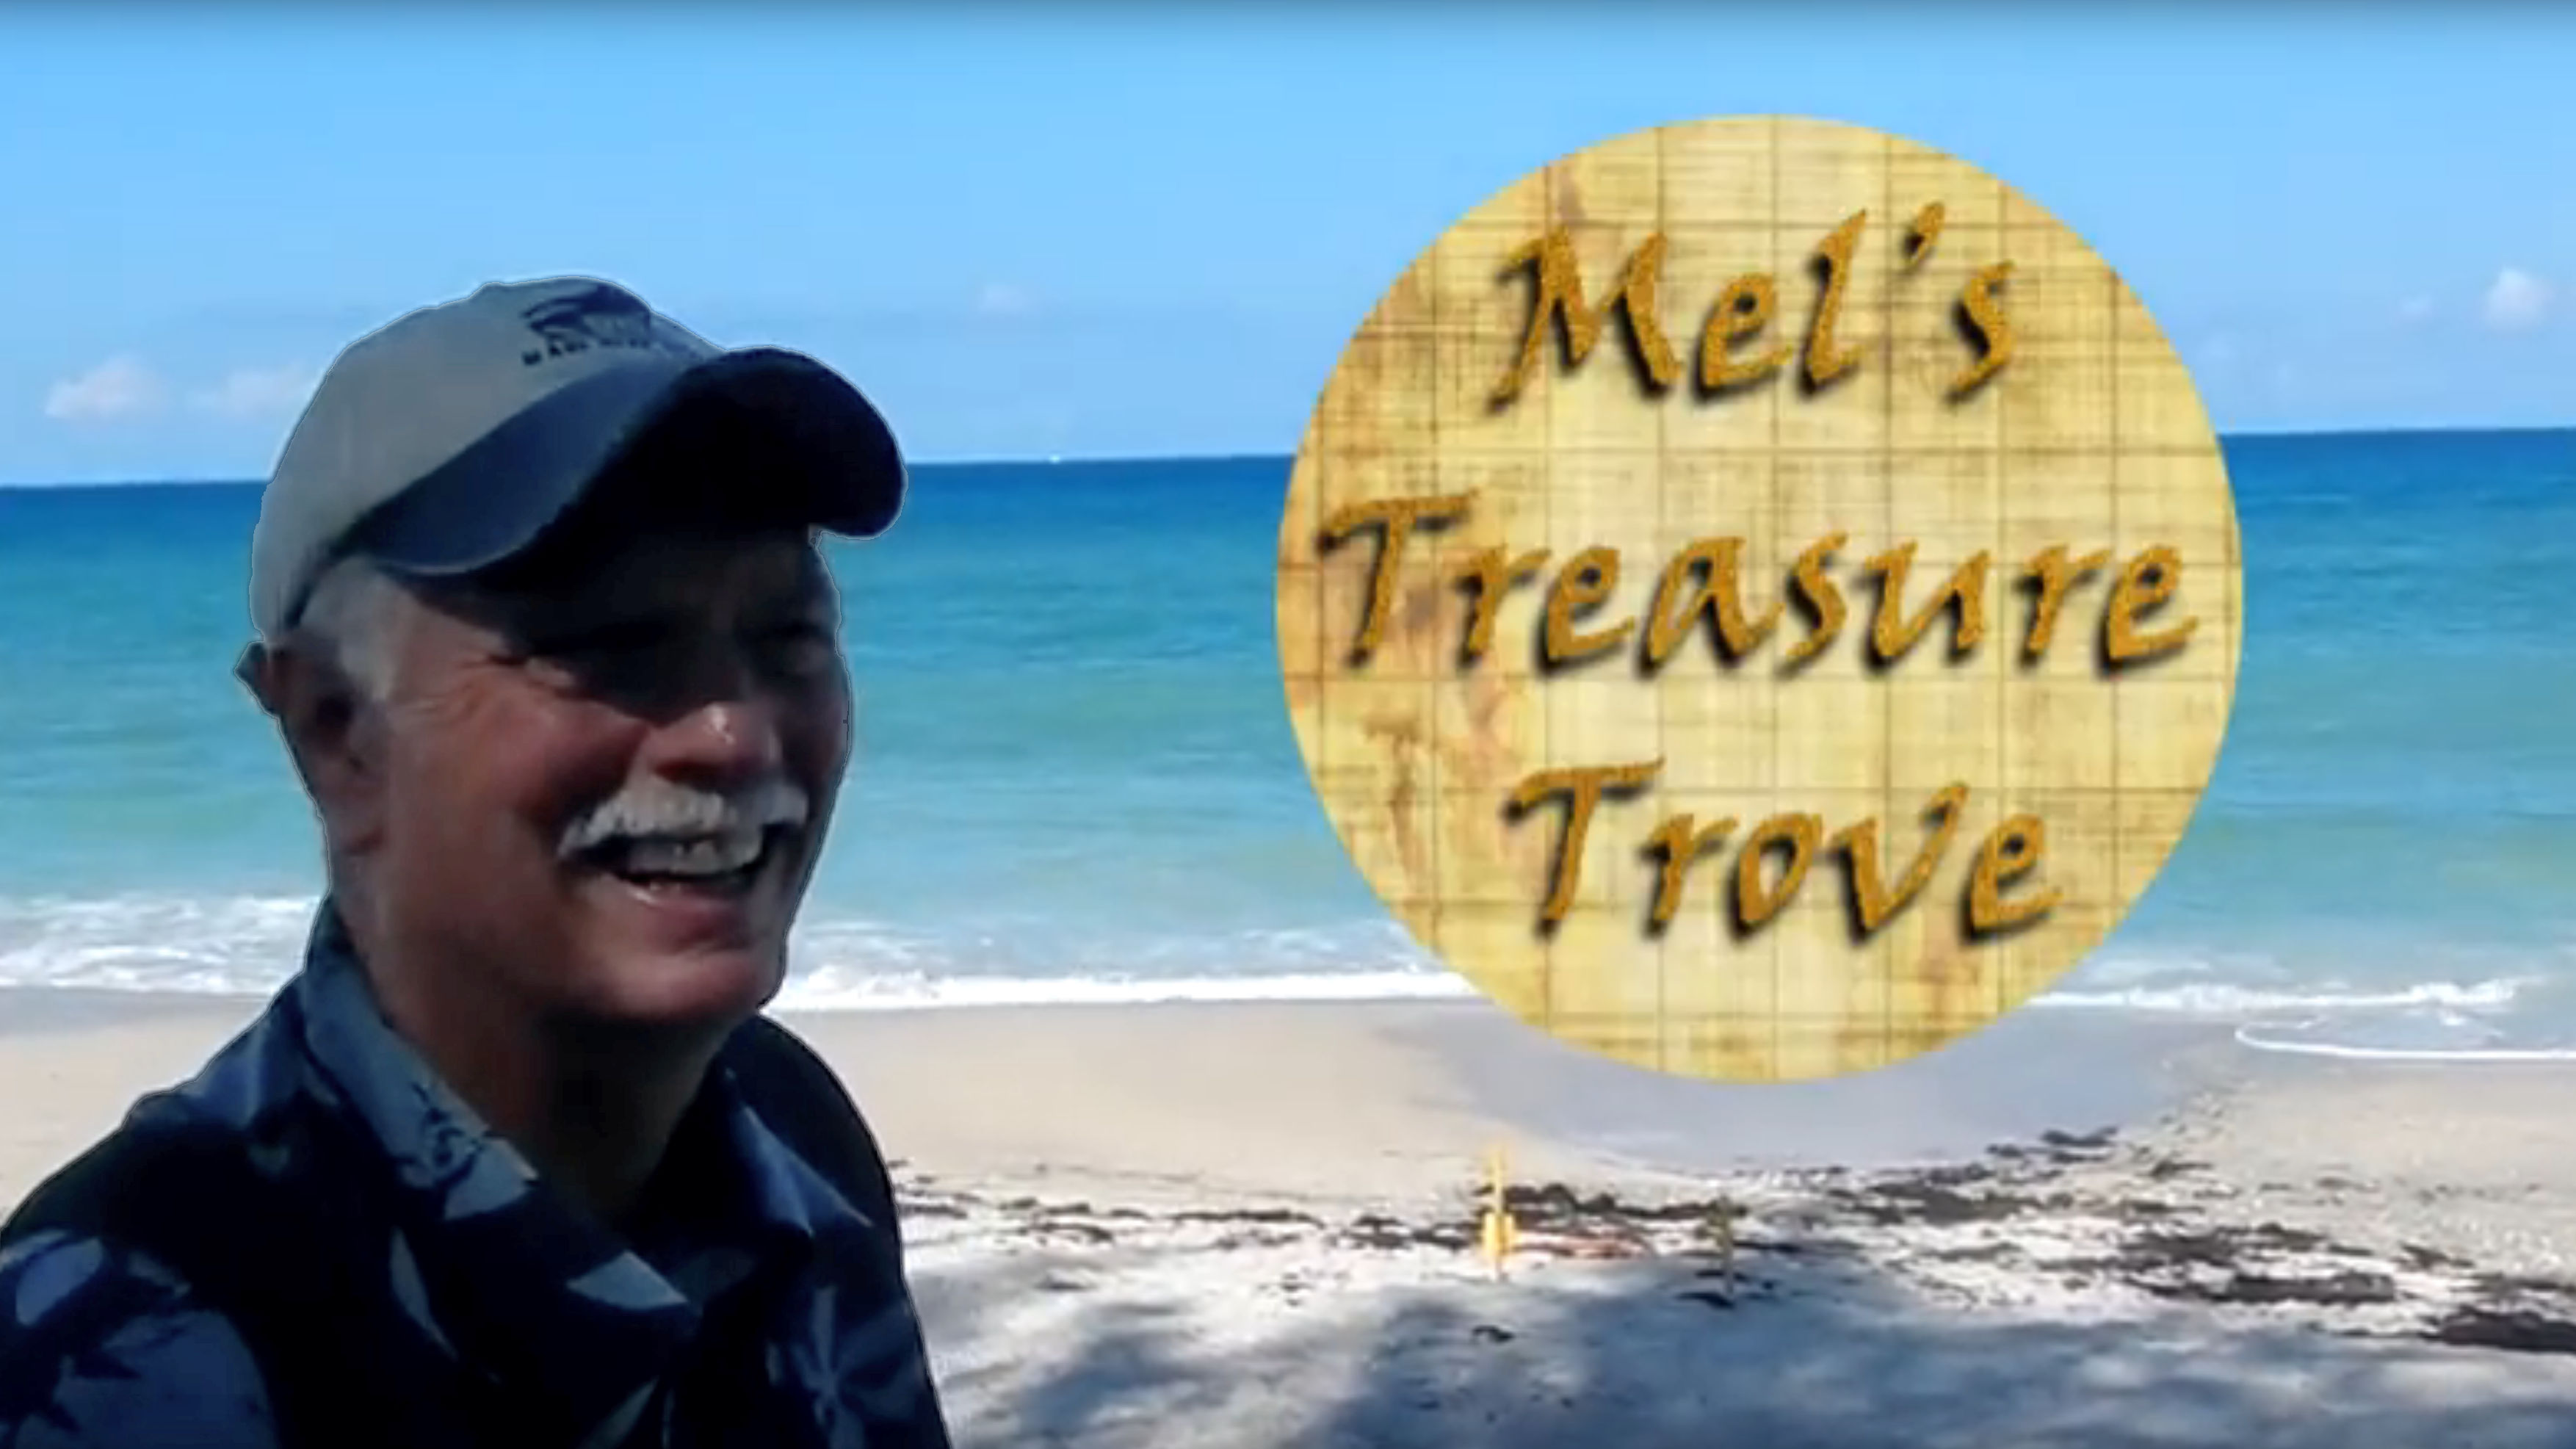 Mels Treasure Trove